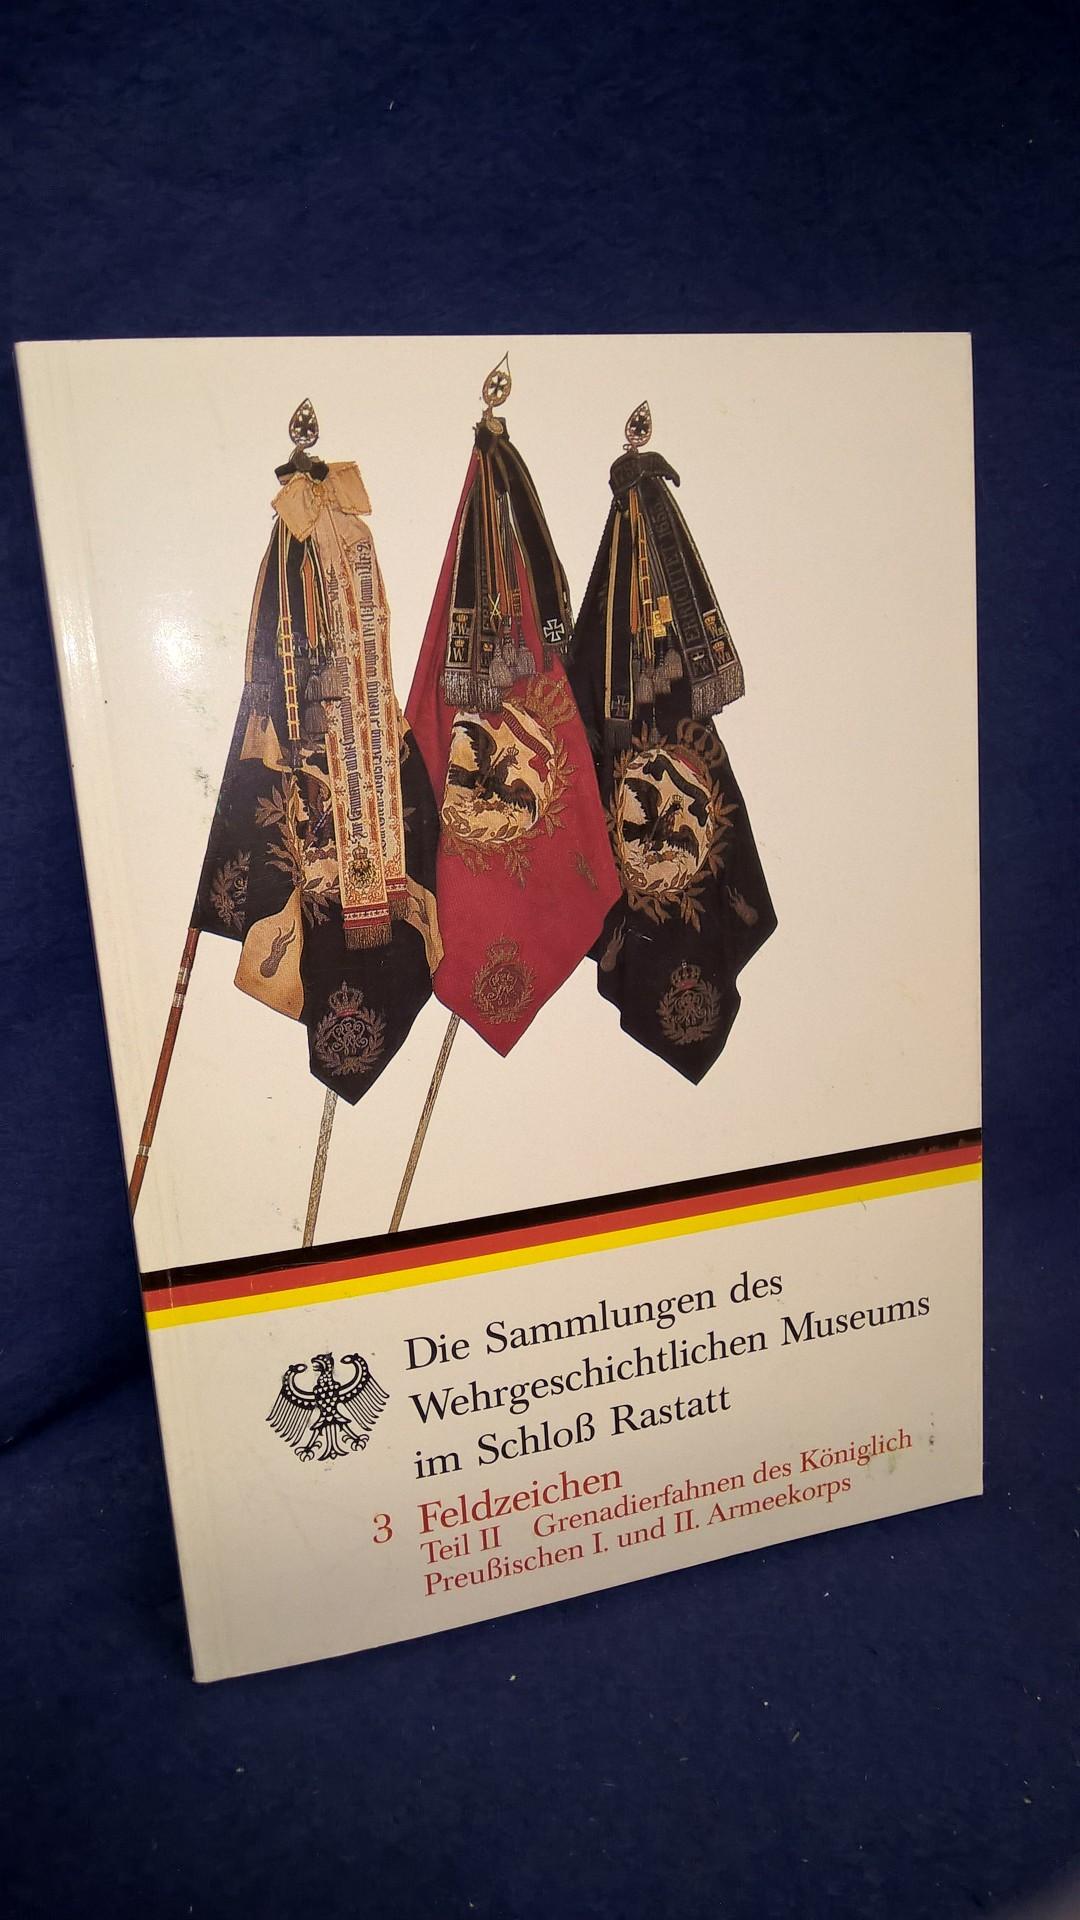 Sammlungen des Wehrgeschichtlichen Museums im Schloß Rastatt. 3 Feldzeichen Teil II: Grenadierfahnen des Königlich Preußischen I. und II. Armeekorps. 